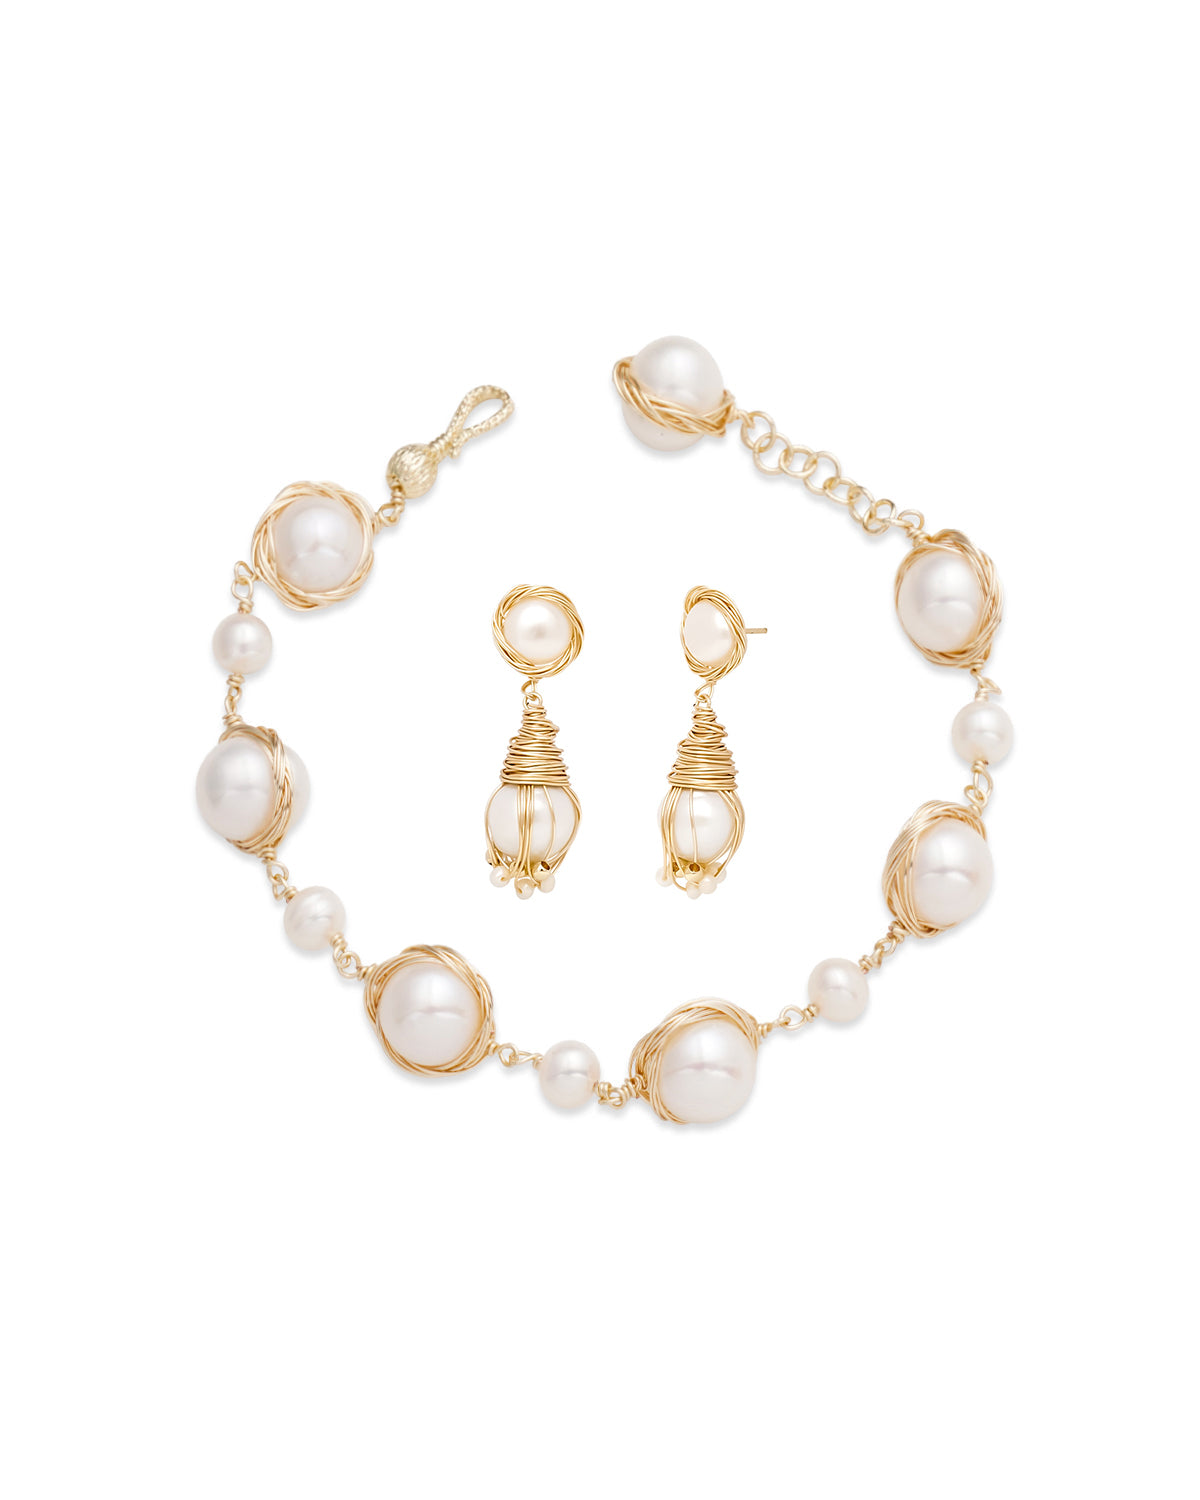 20-21mm White Pearl Drop Earrings & 11-12mm White Pearl Bracelet Set